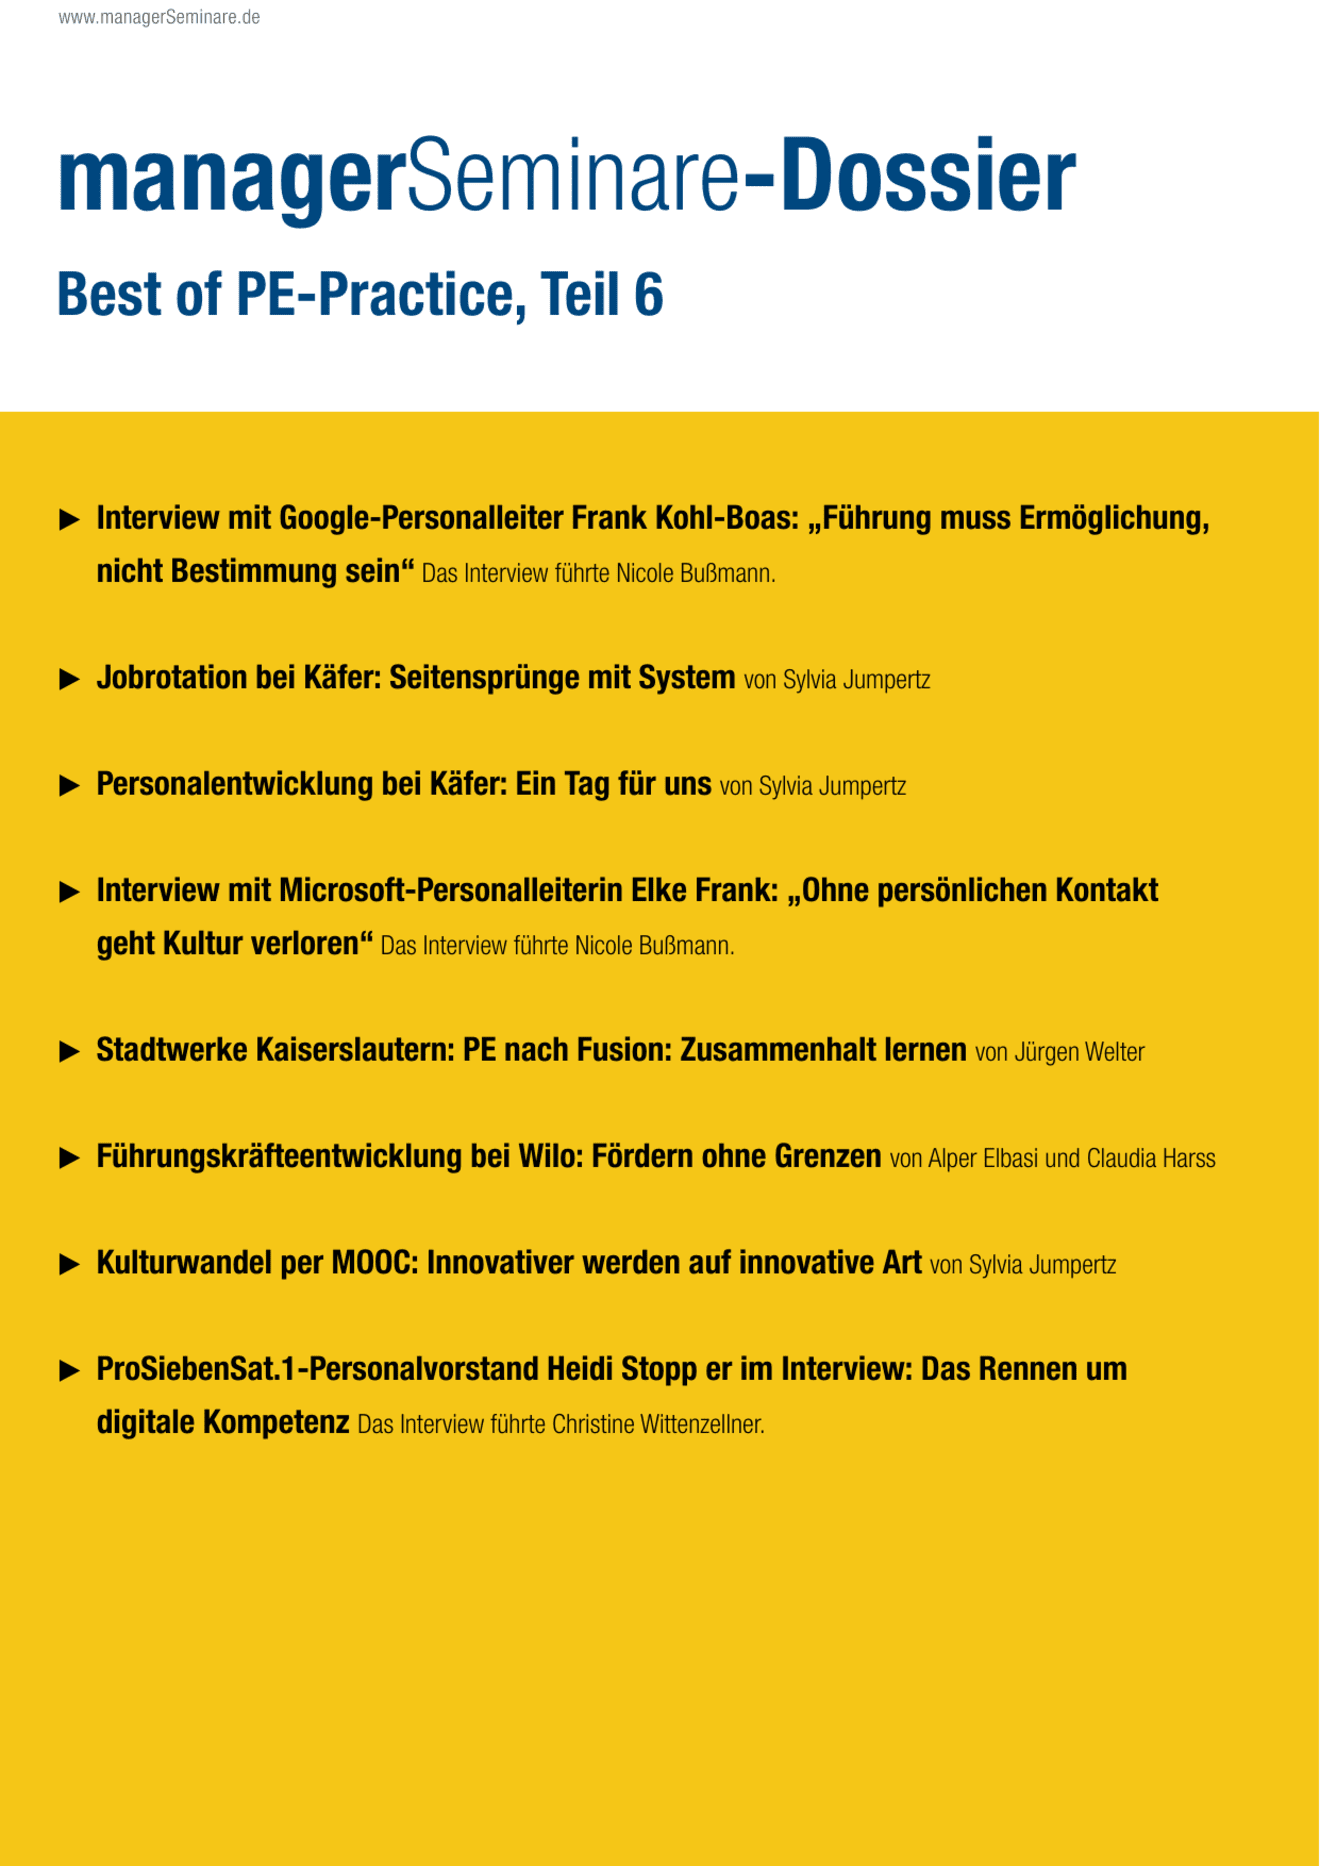 Dossier Best of PE-Practice, Teil 6